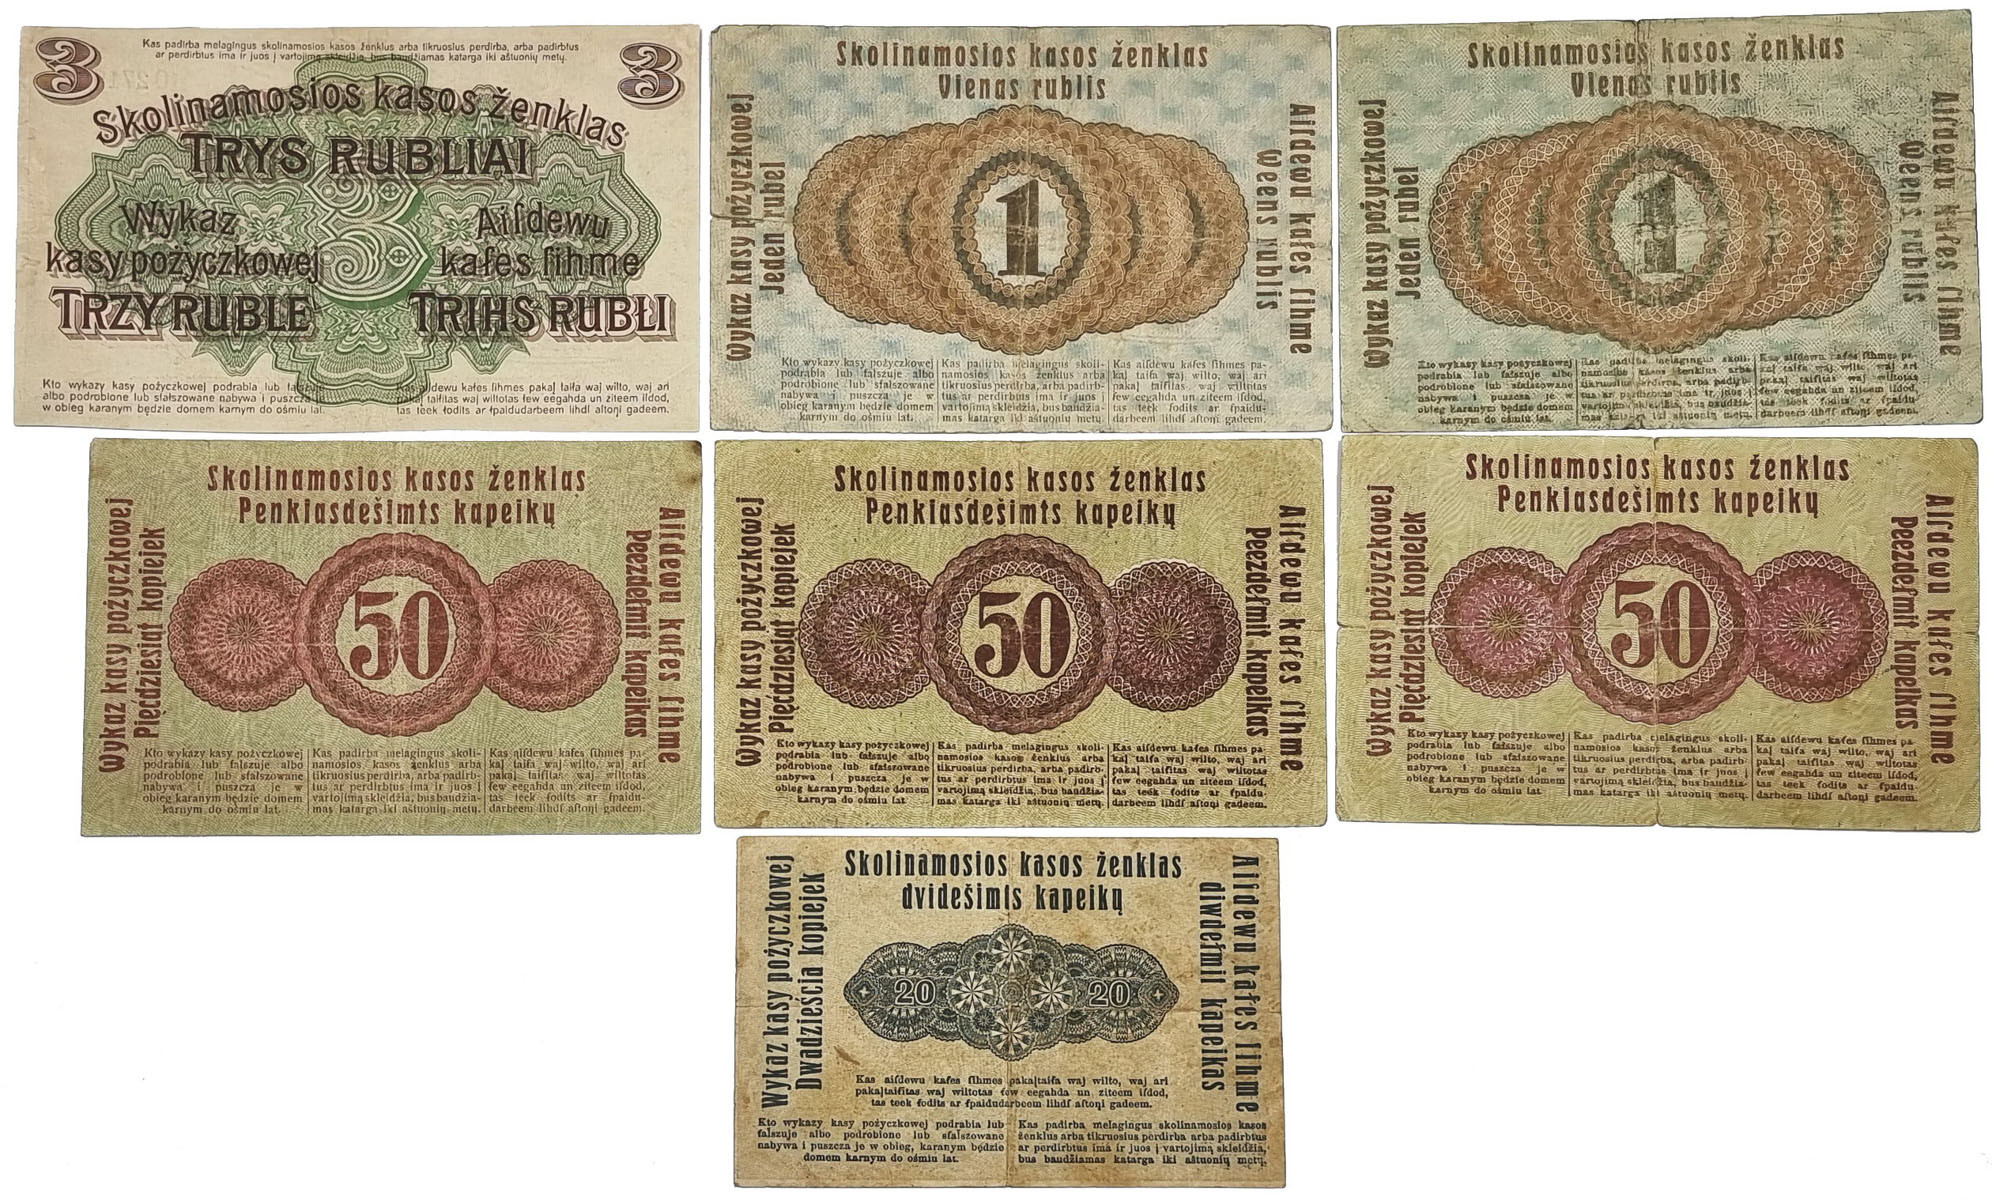 20 kopiejek do 3 rubli 1916, Poznań, zestaw 7 banknotów